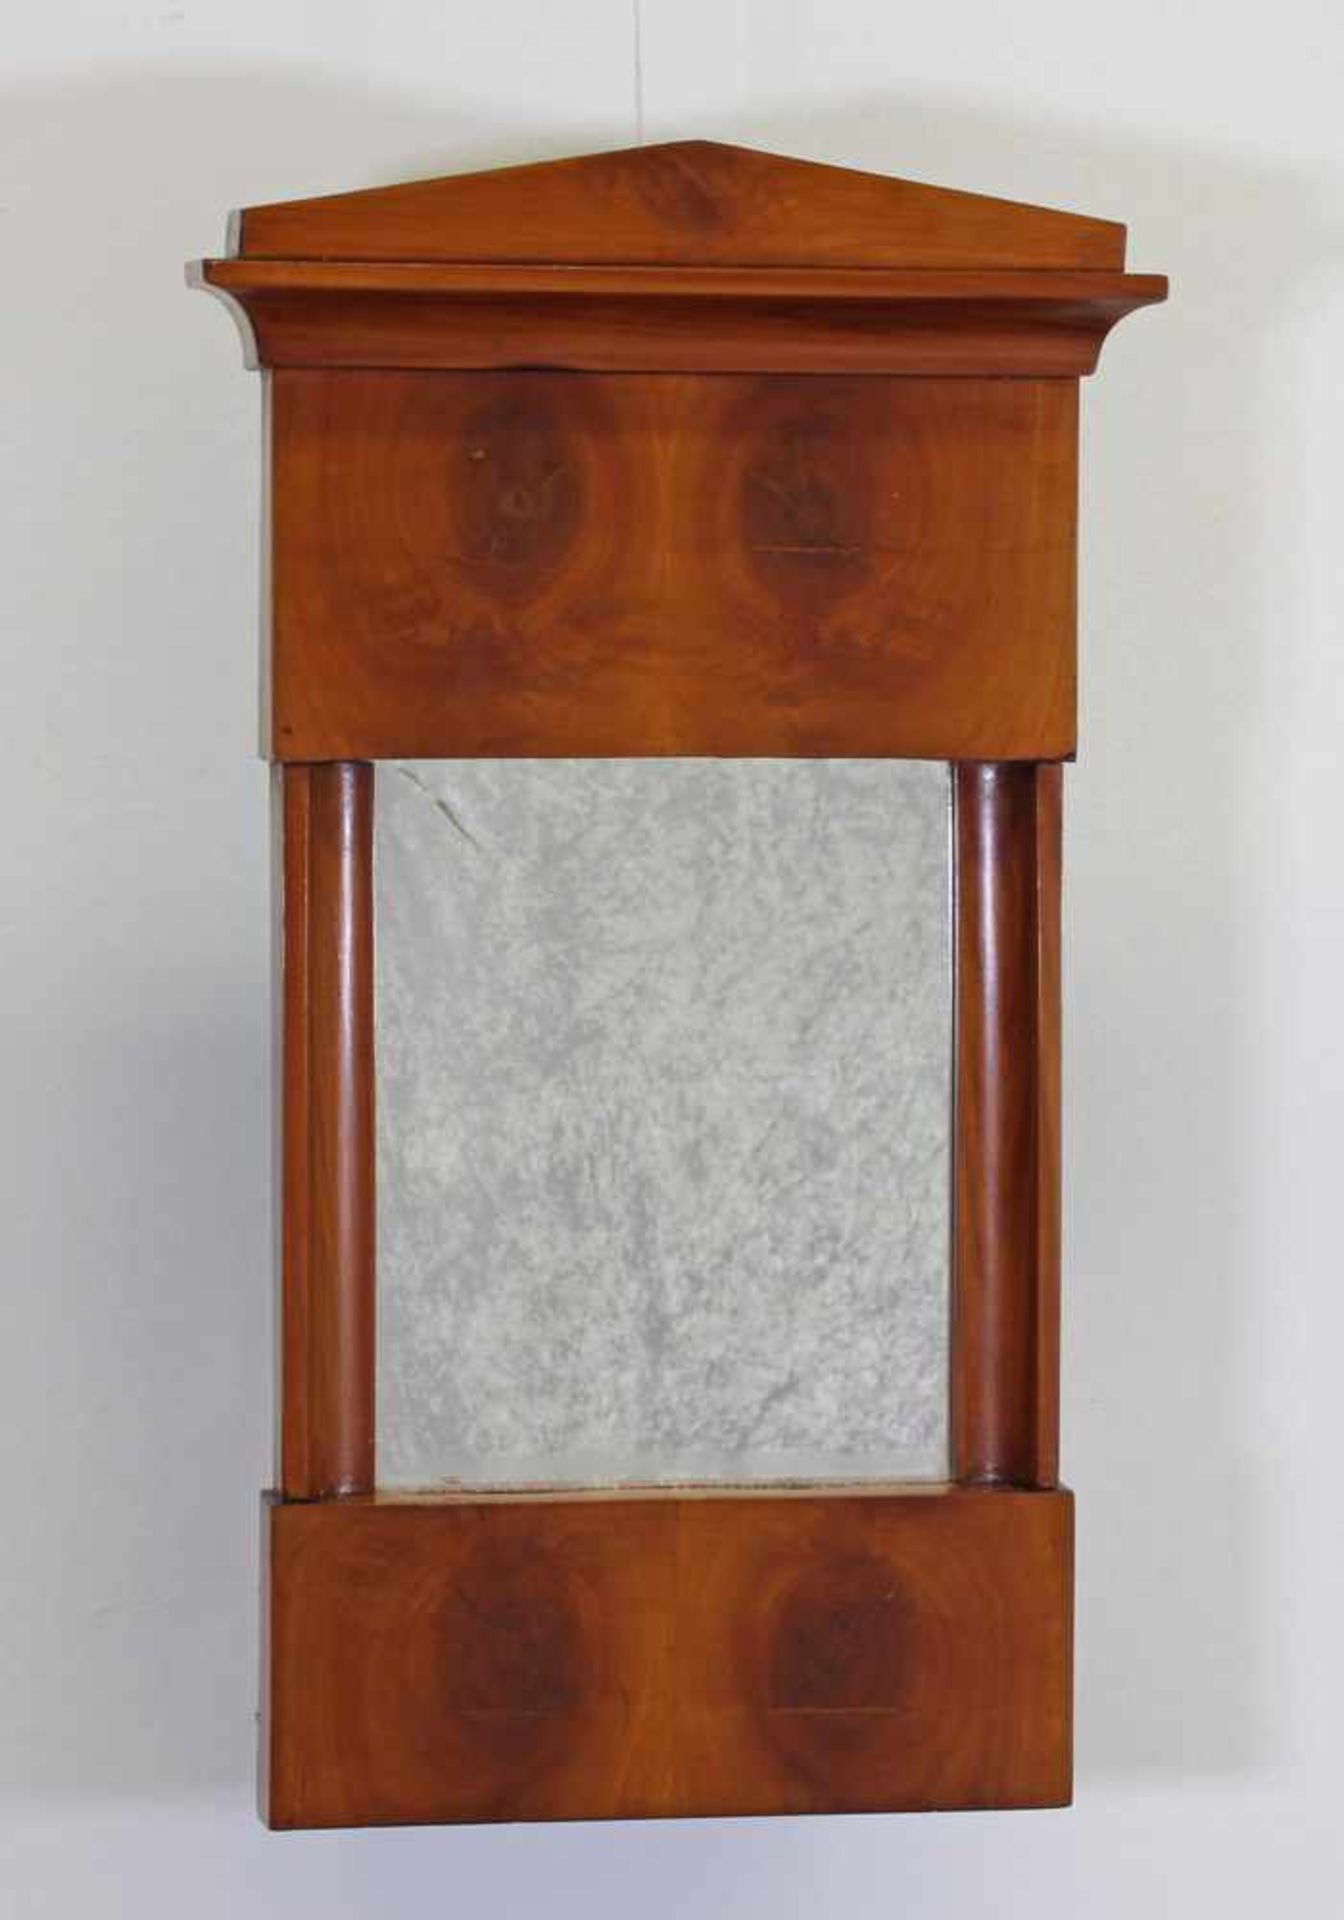 Spiegel, Biedermeier, um 1820, Kirschbaum, 61 x 35 cm- - -25.00 % buyer's premium on the hammer - Bild 2 aus 2